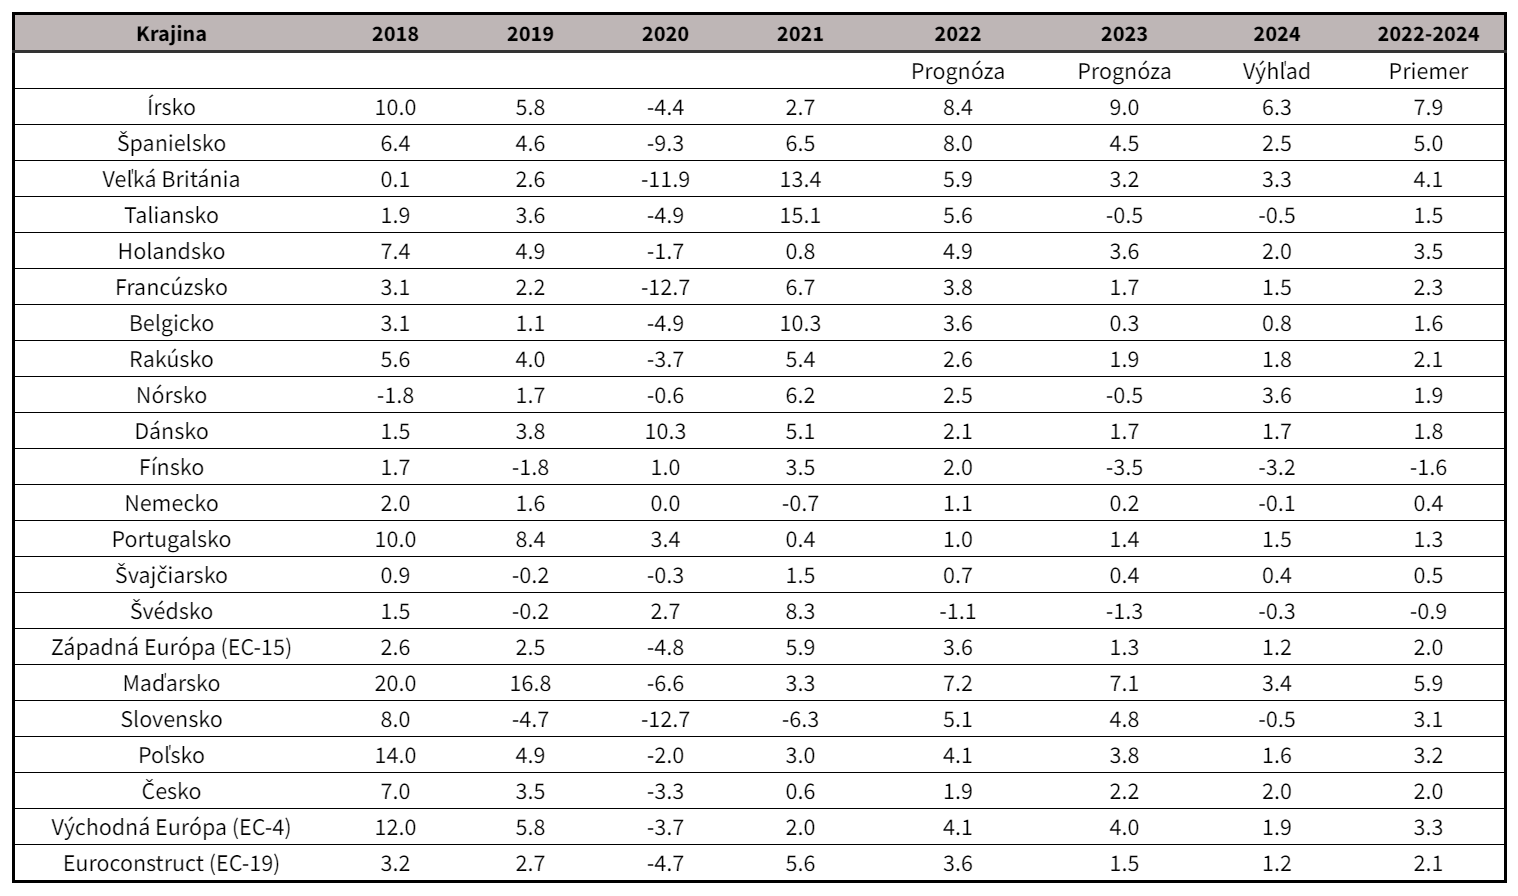 Domáca stavebná produkcia v krajinách Euroconstructu, medziročná zmena (%, b.c.)